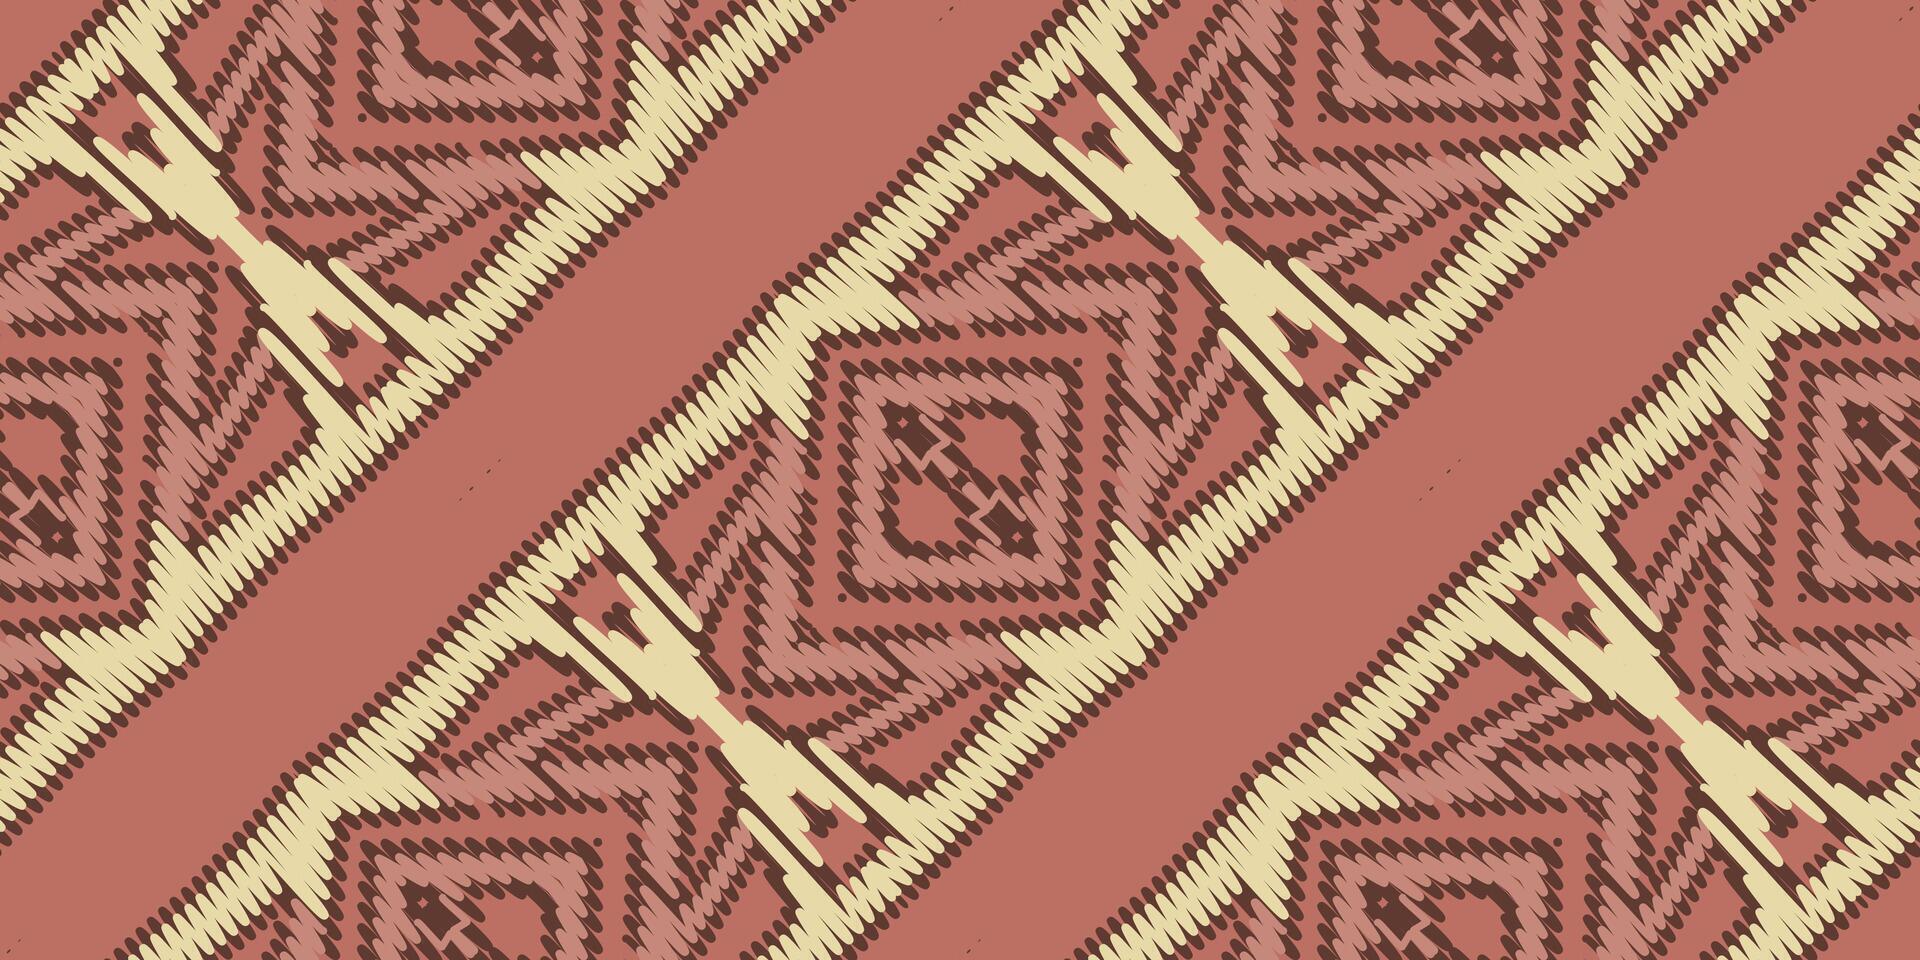 barock mönster sömlös inföding amerikansk, motiv broderi, ikat broderi vektor design för skriva ut jacquard slavic mönster folklore mönster kente arabesk